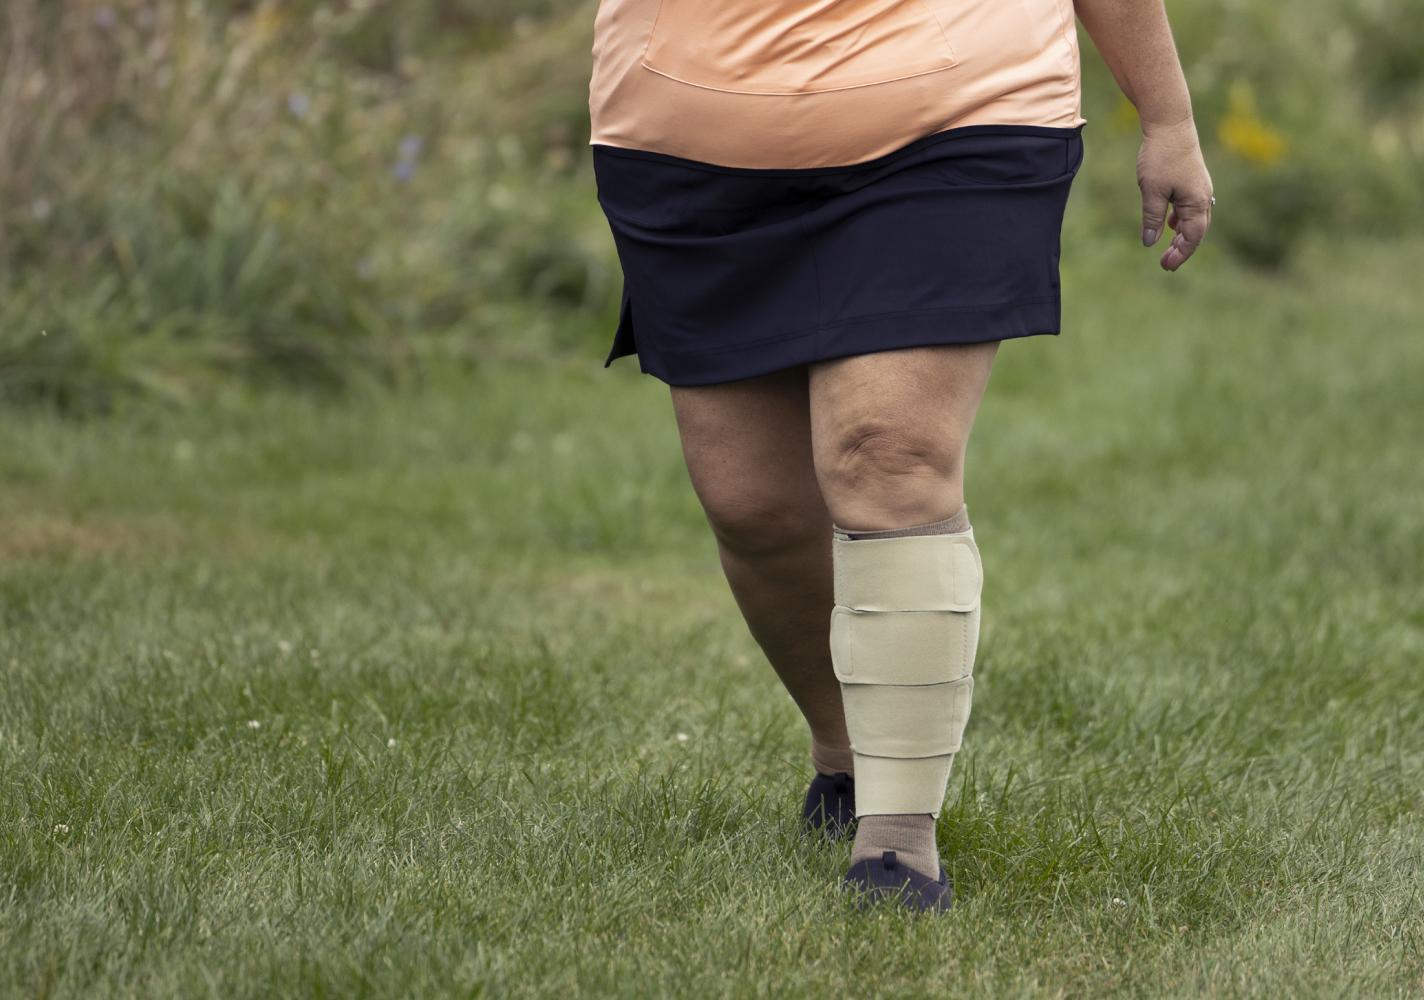 A woman wearing a leg wrap